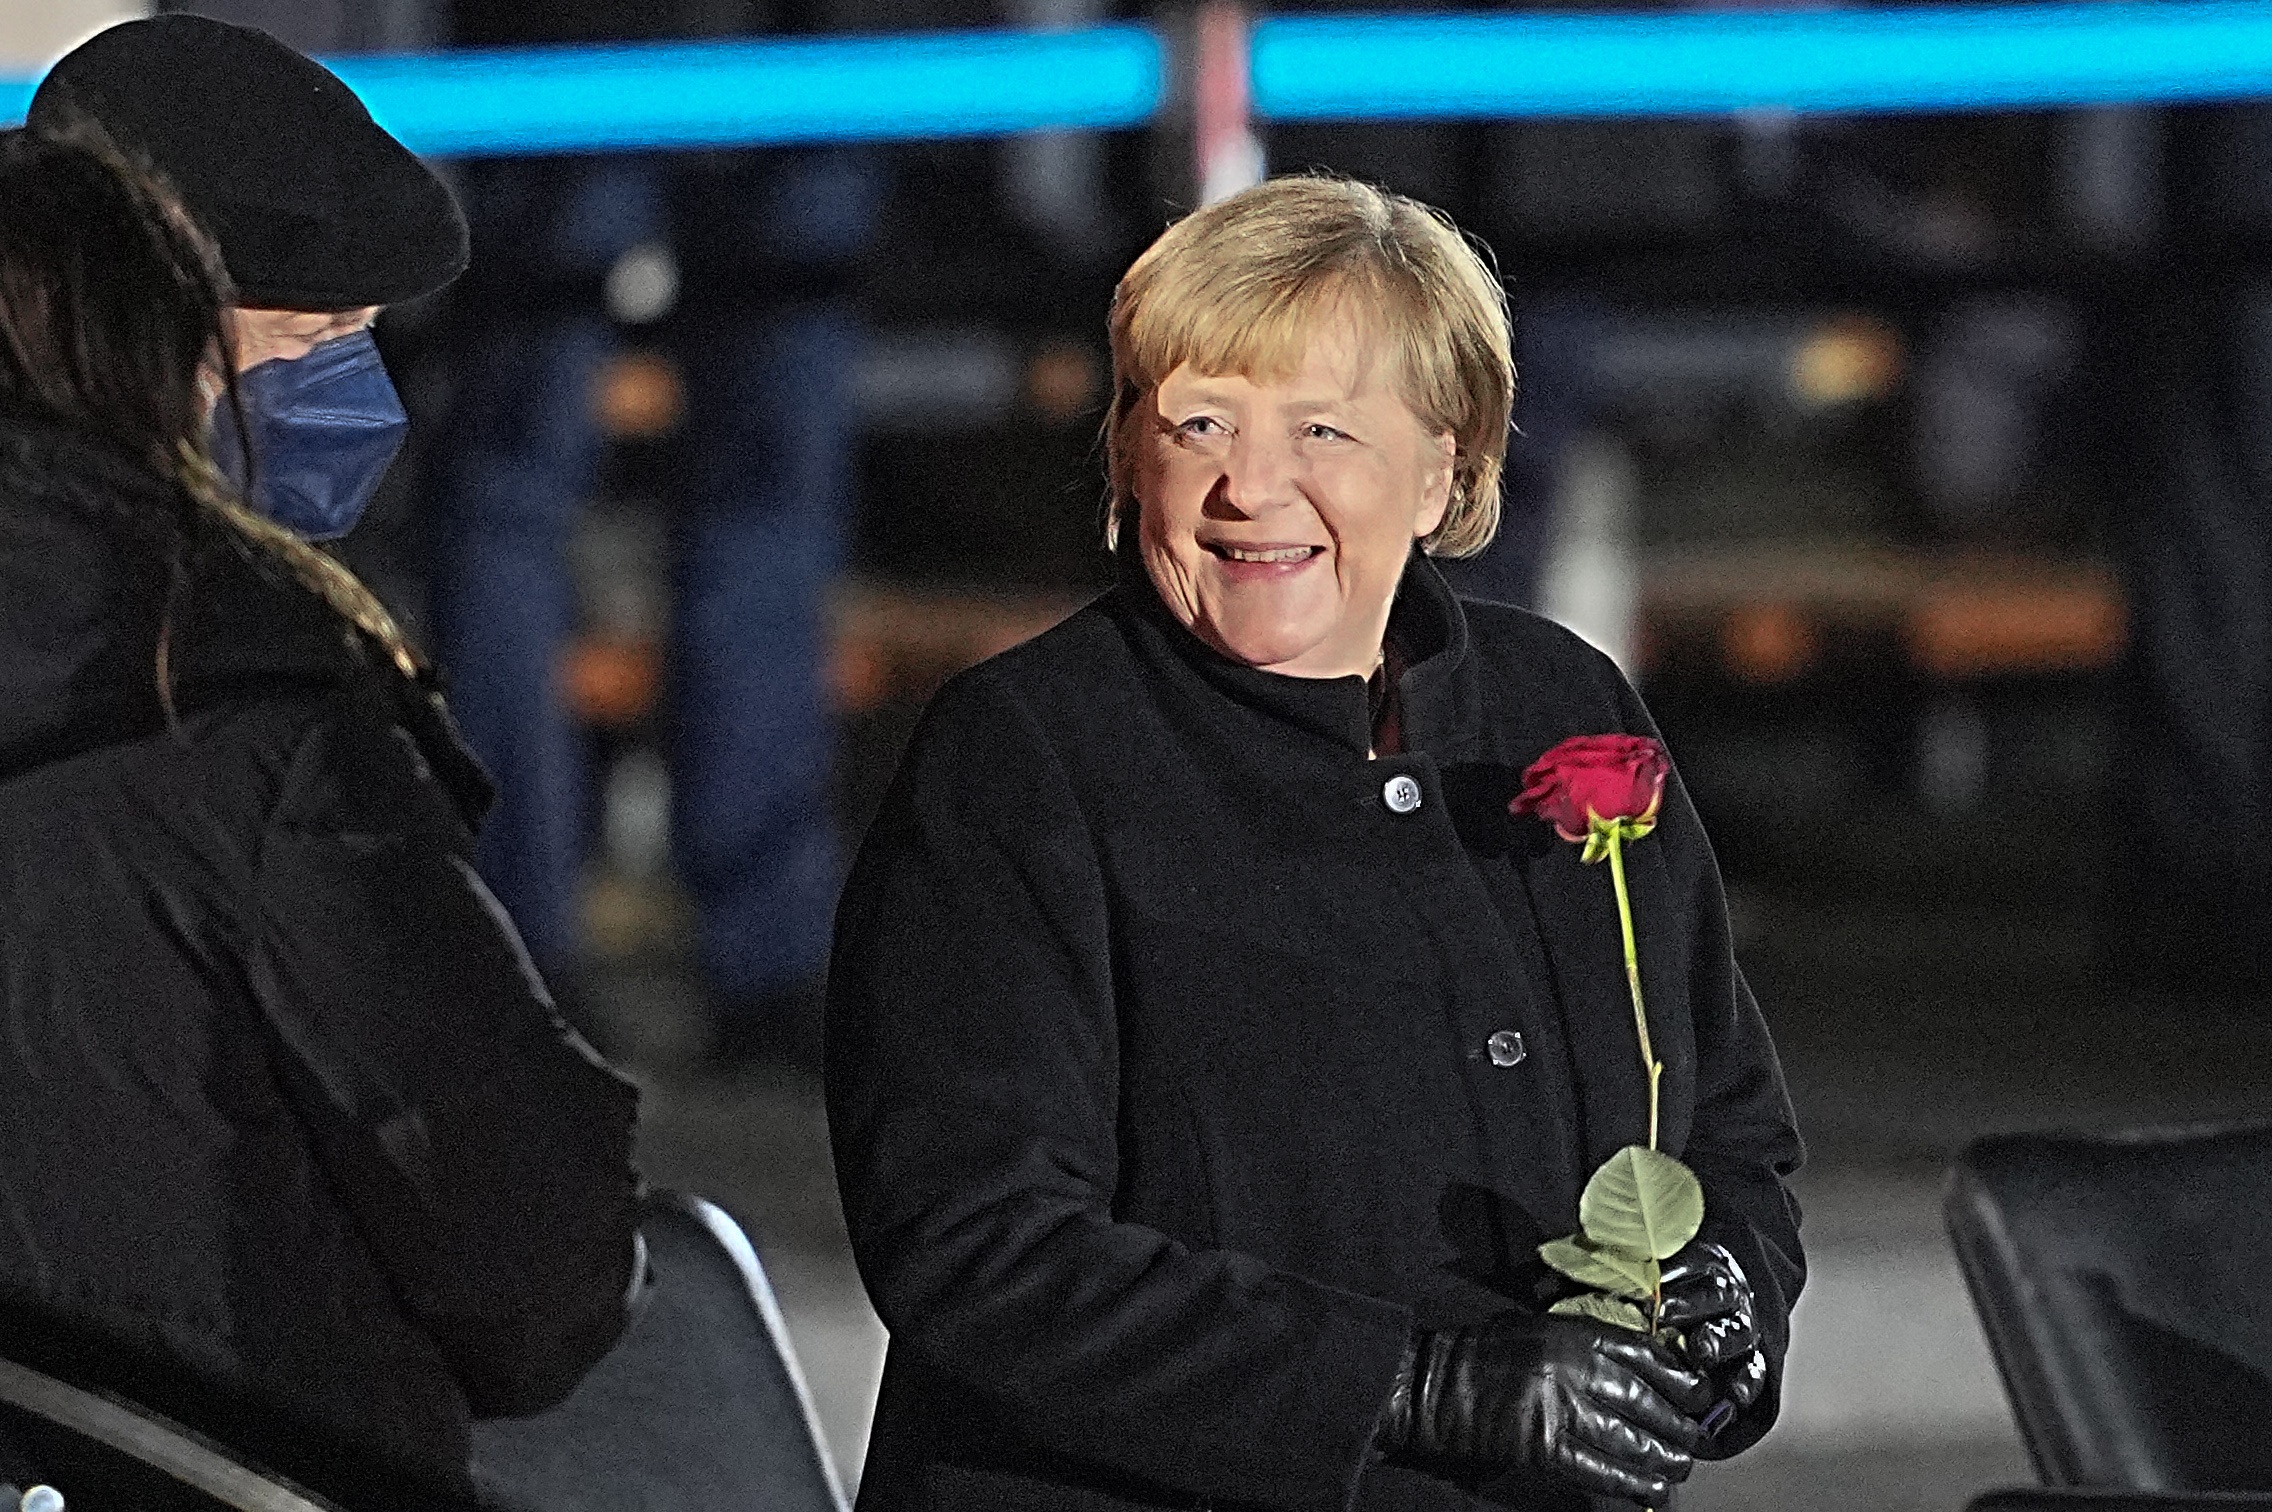 Angela Merkel Konrad Adenauer és Helmut Kohl után harmadikként kapja meg a legmagasabb német állami kitüntetést